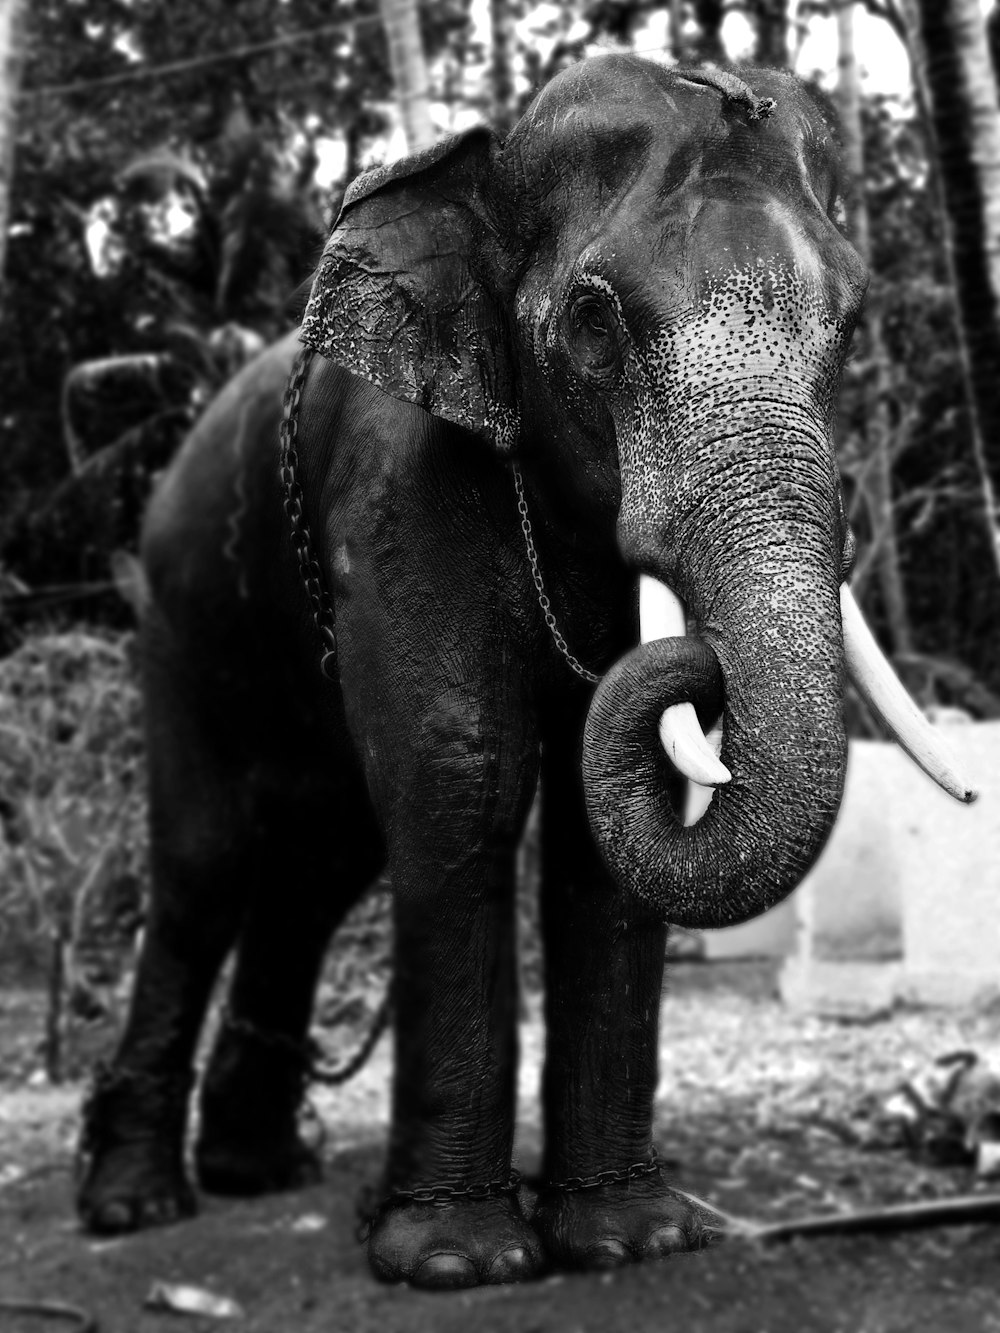 Fotografía en escala de grises de un elefante